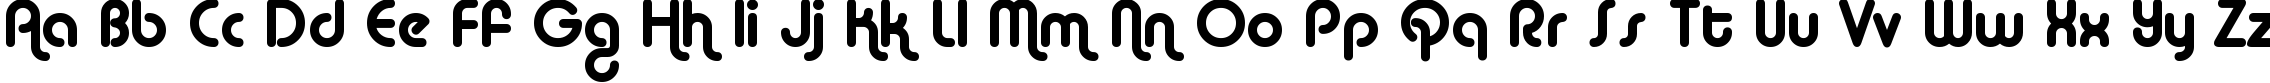 Пример написания английского алфавита шрифтом Alba